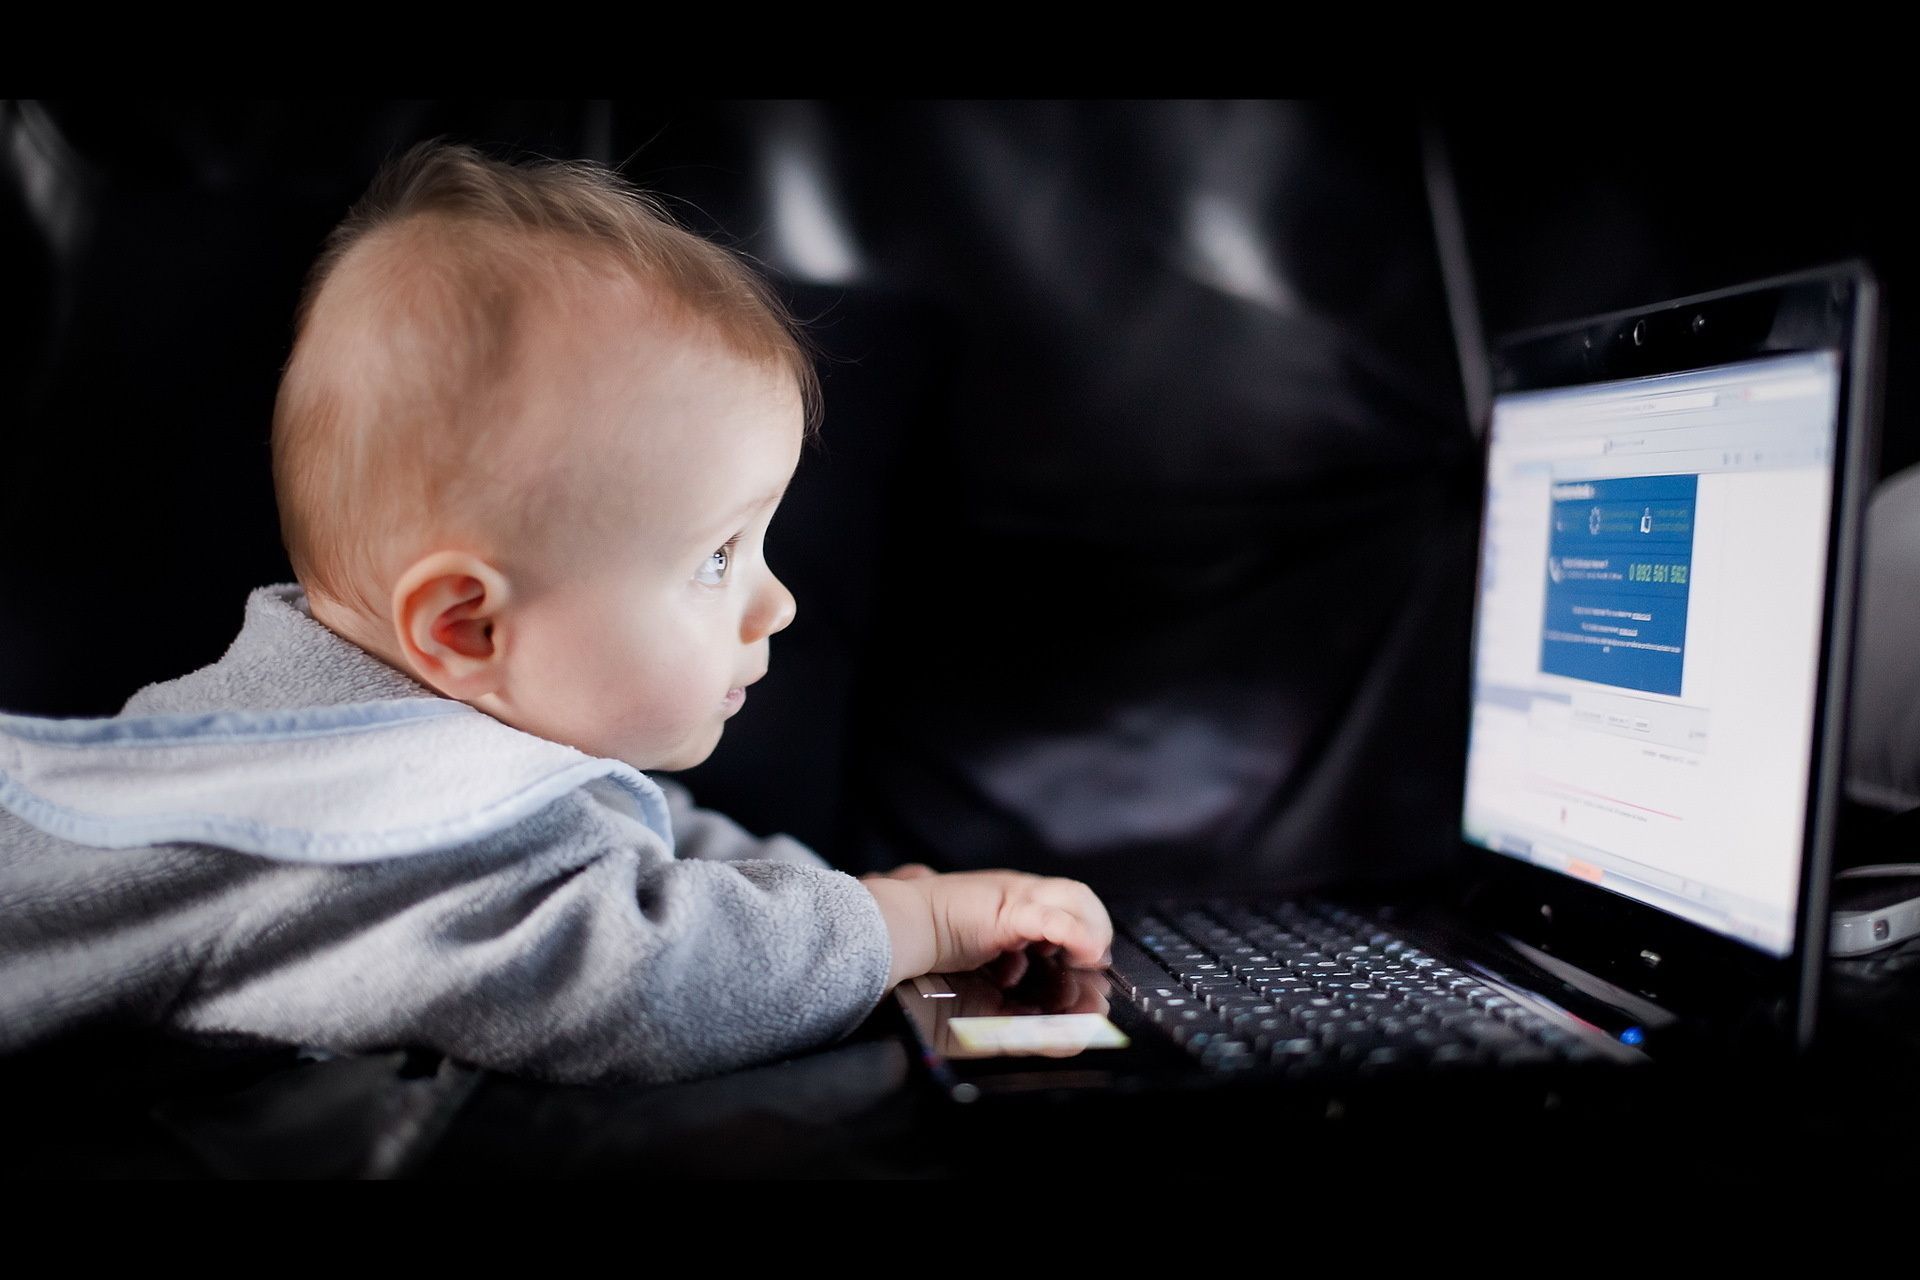 младенцы ребенок компьютер один в помещении технология интернет ребенок портрет